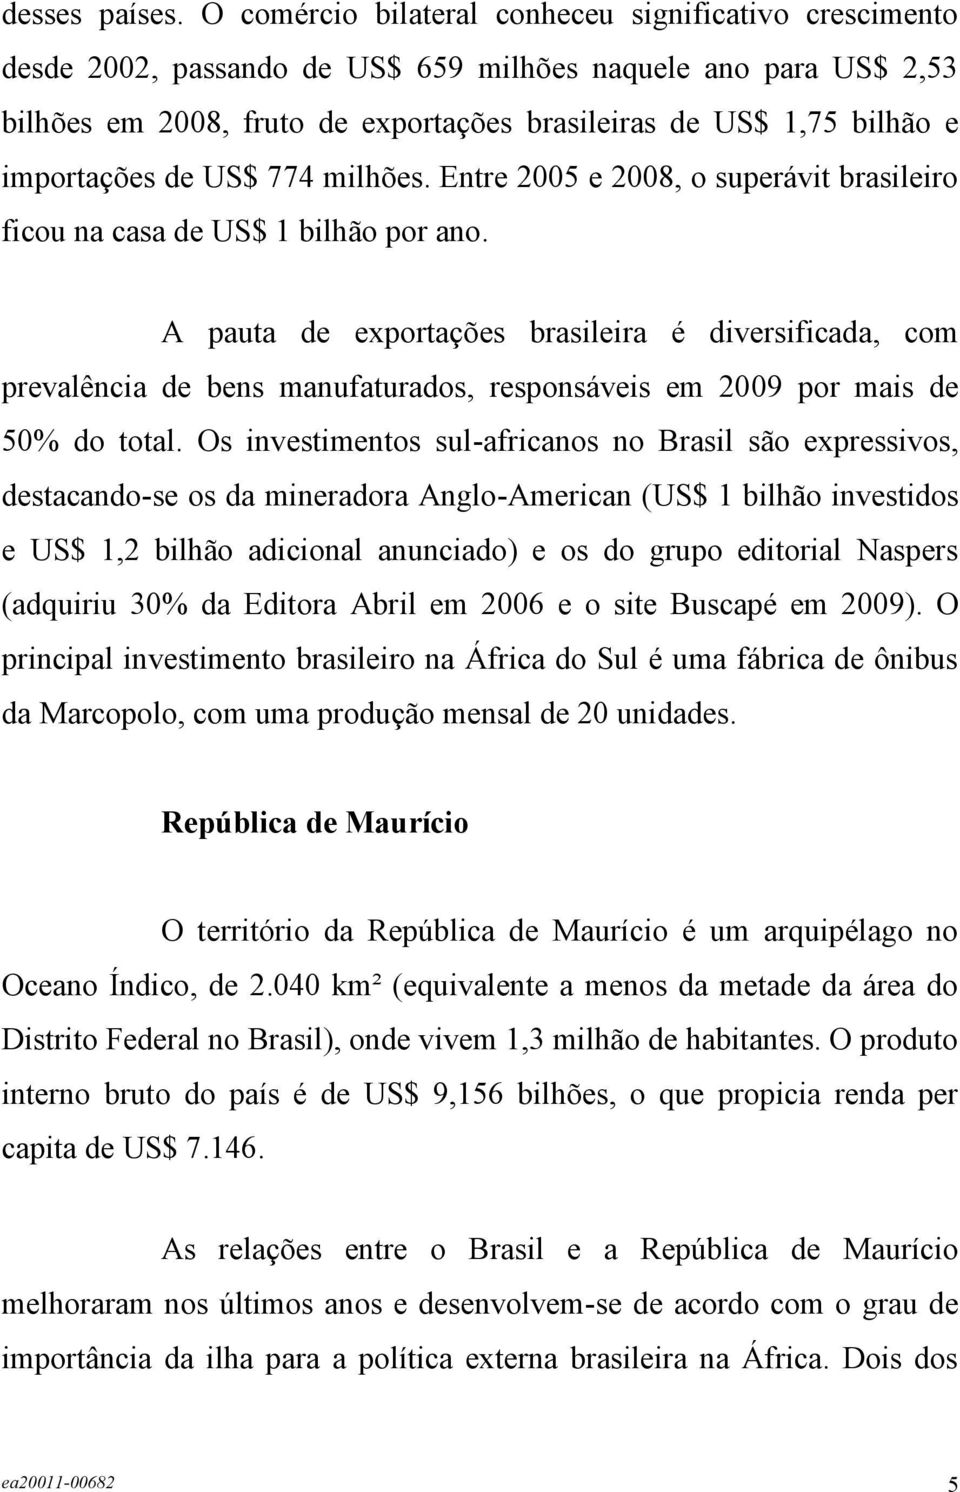 importações de US$ 774 milhões. Entre 2005 e 2008, o superávit brasileiro ficou na casa de US$ 1 bilhão por ano.